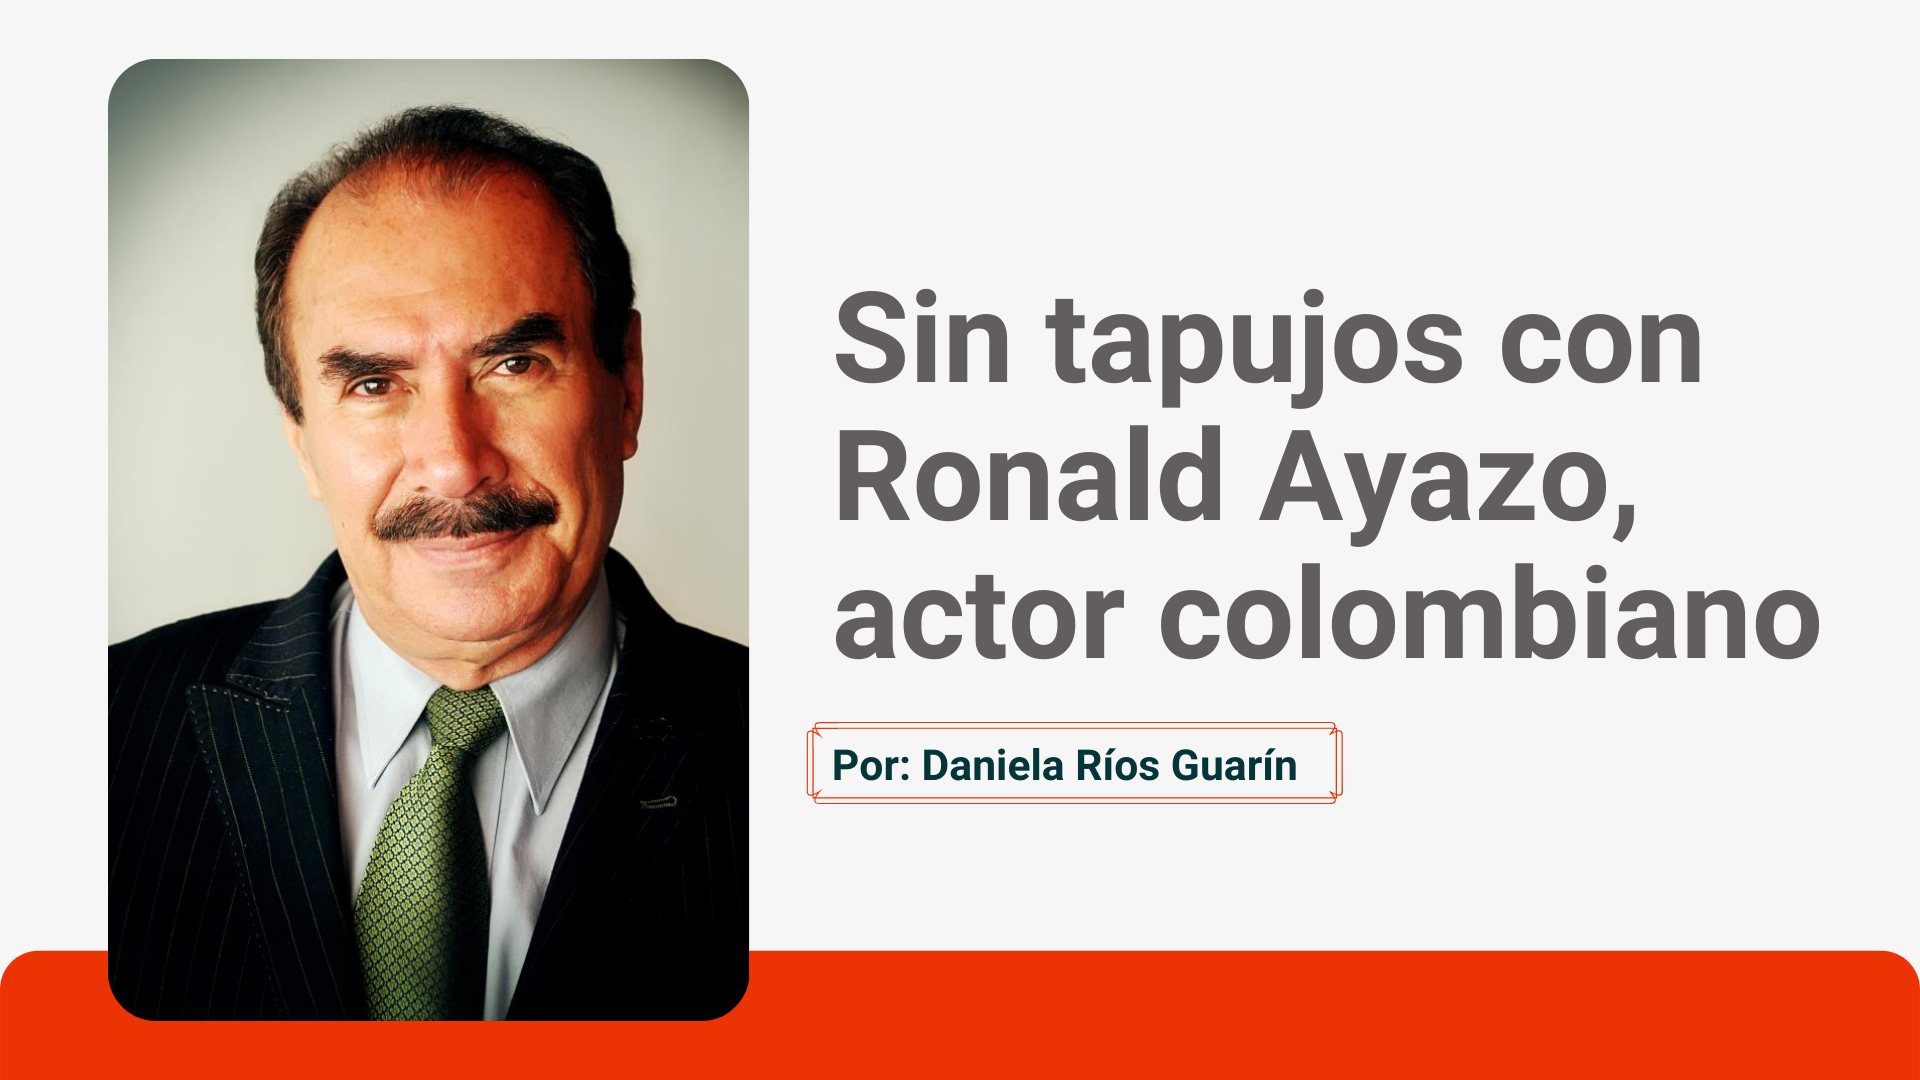  Sin tapujos con Ronald Ayazo, actor colombiano